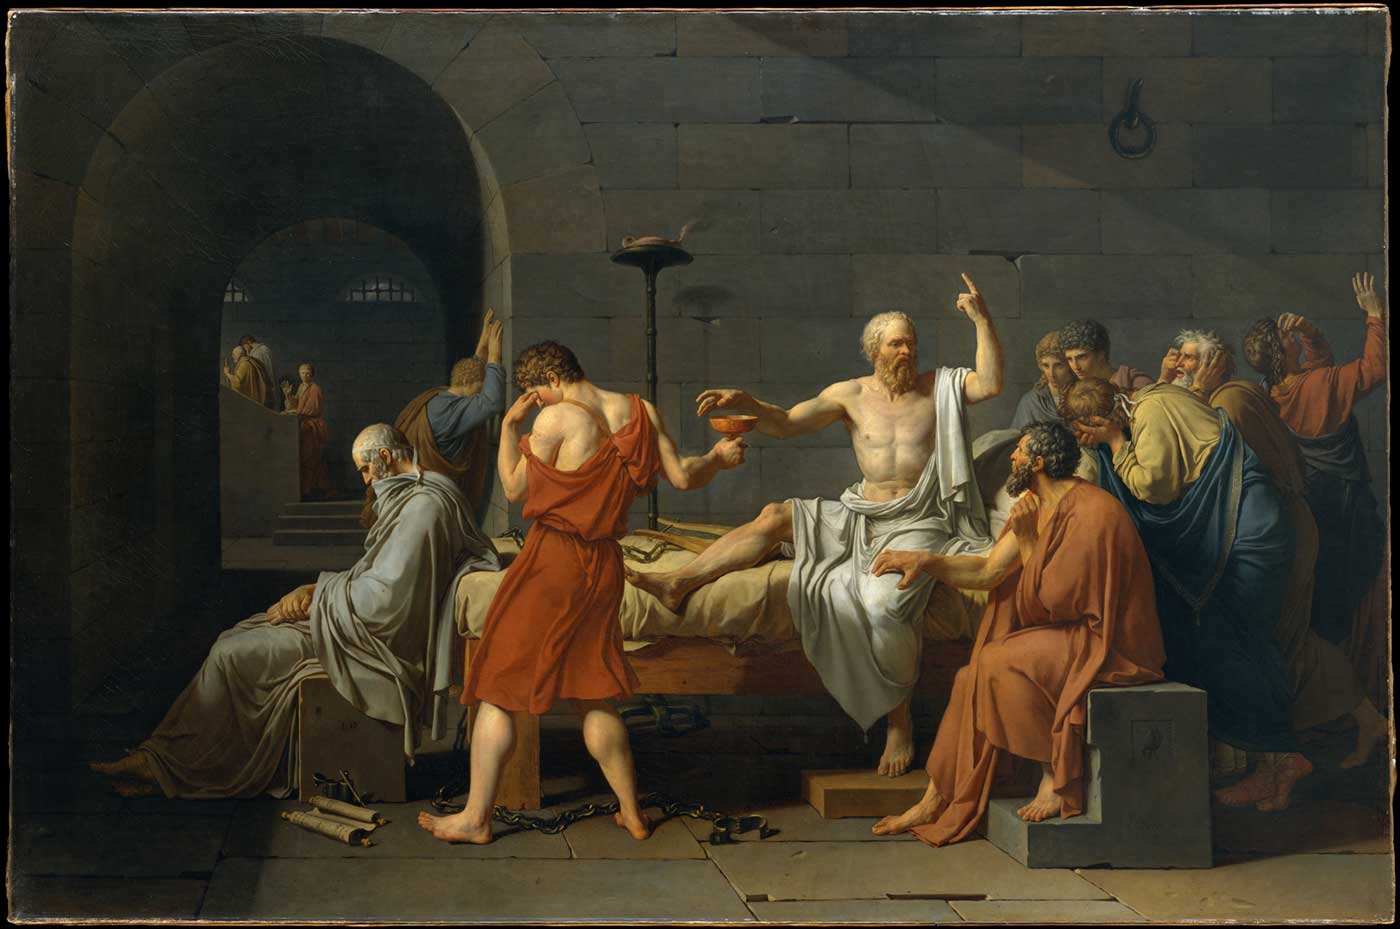 La muerte de Sócrates. Cuadro del pintor francés Jacques-Louis David